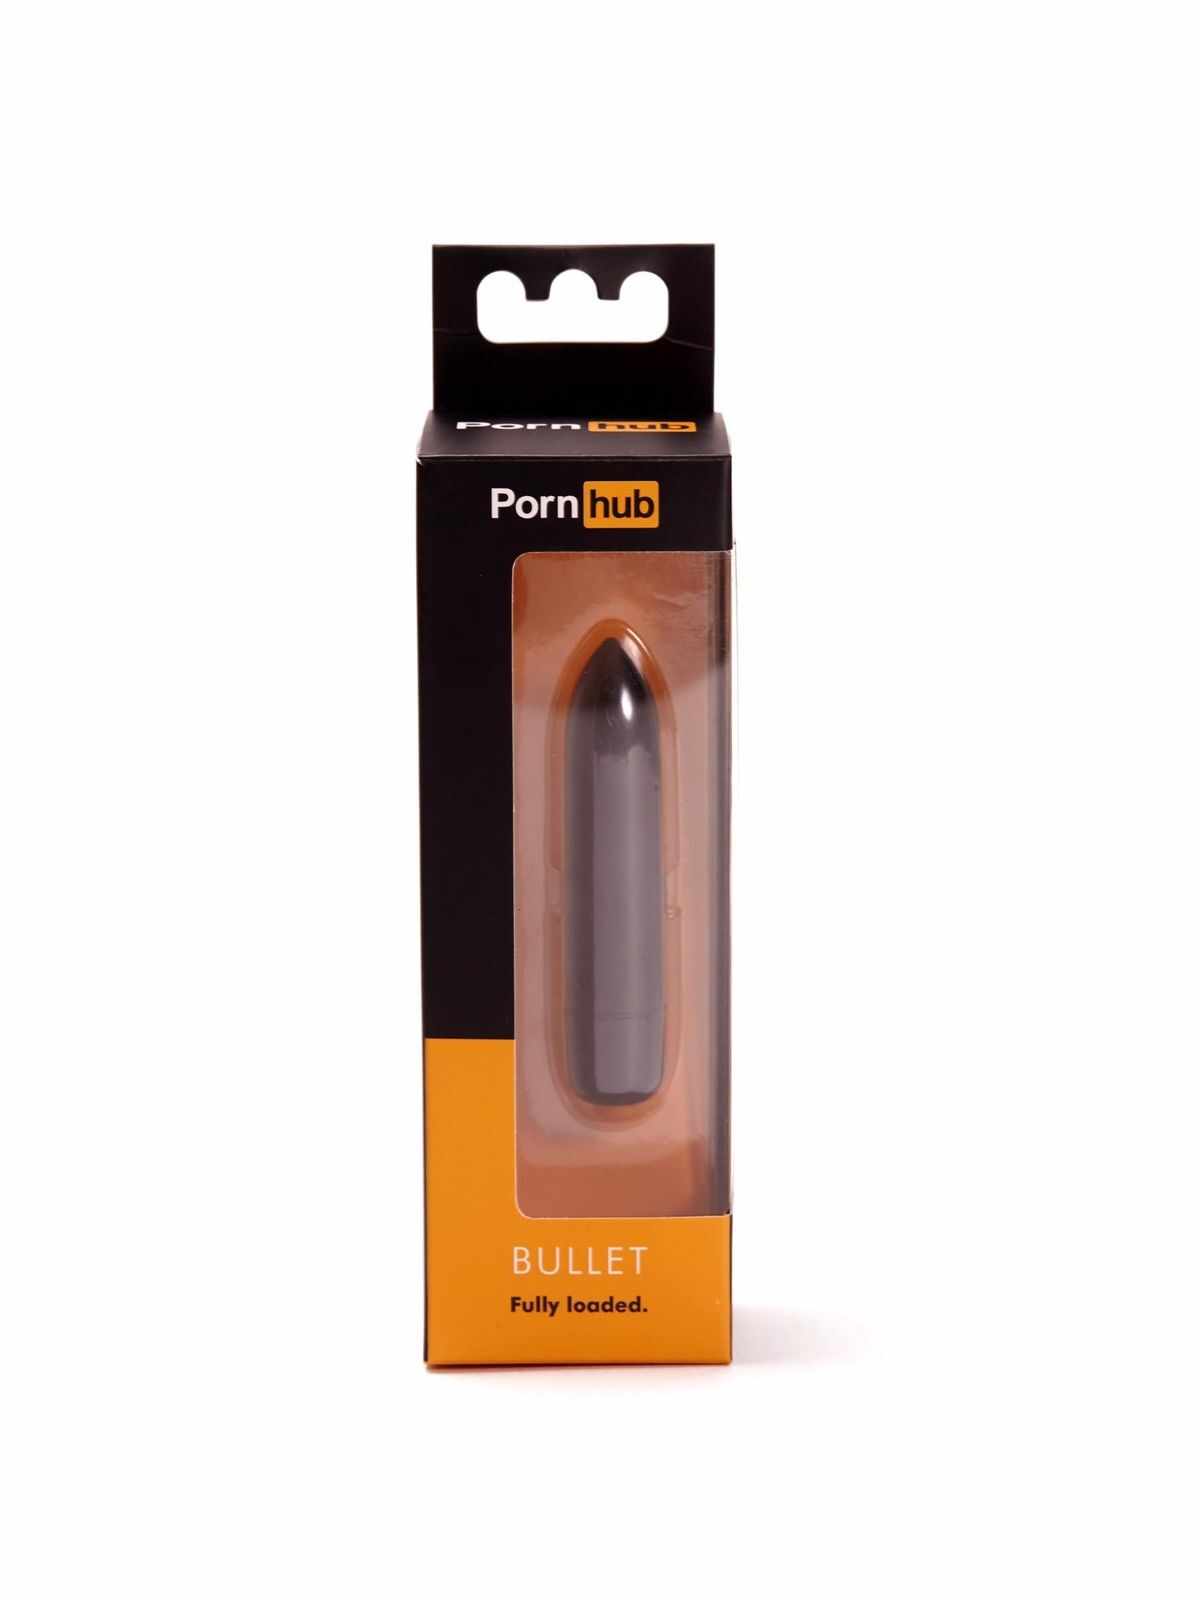 Mini vibrator Porn Hub Bullet